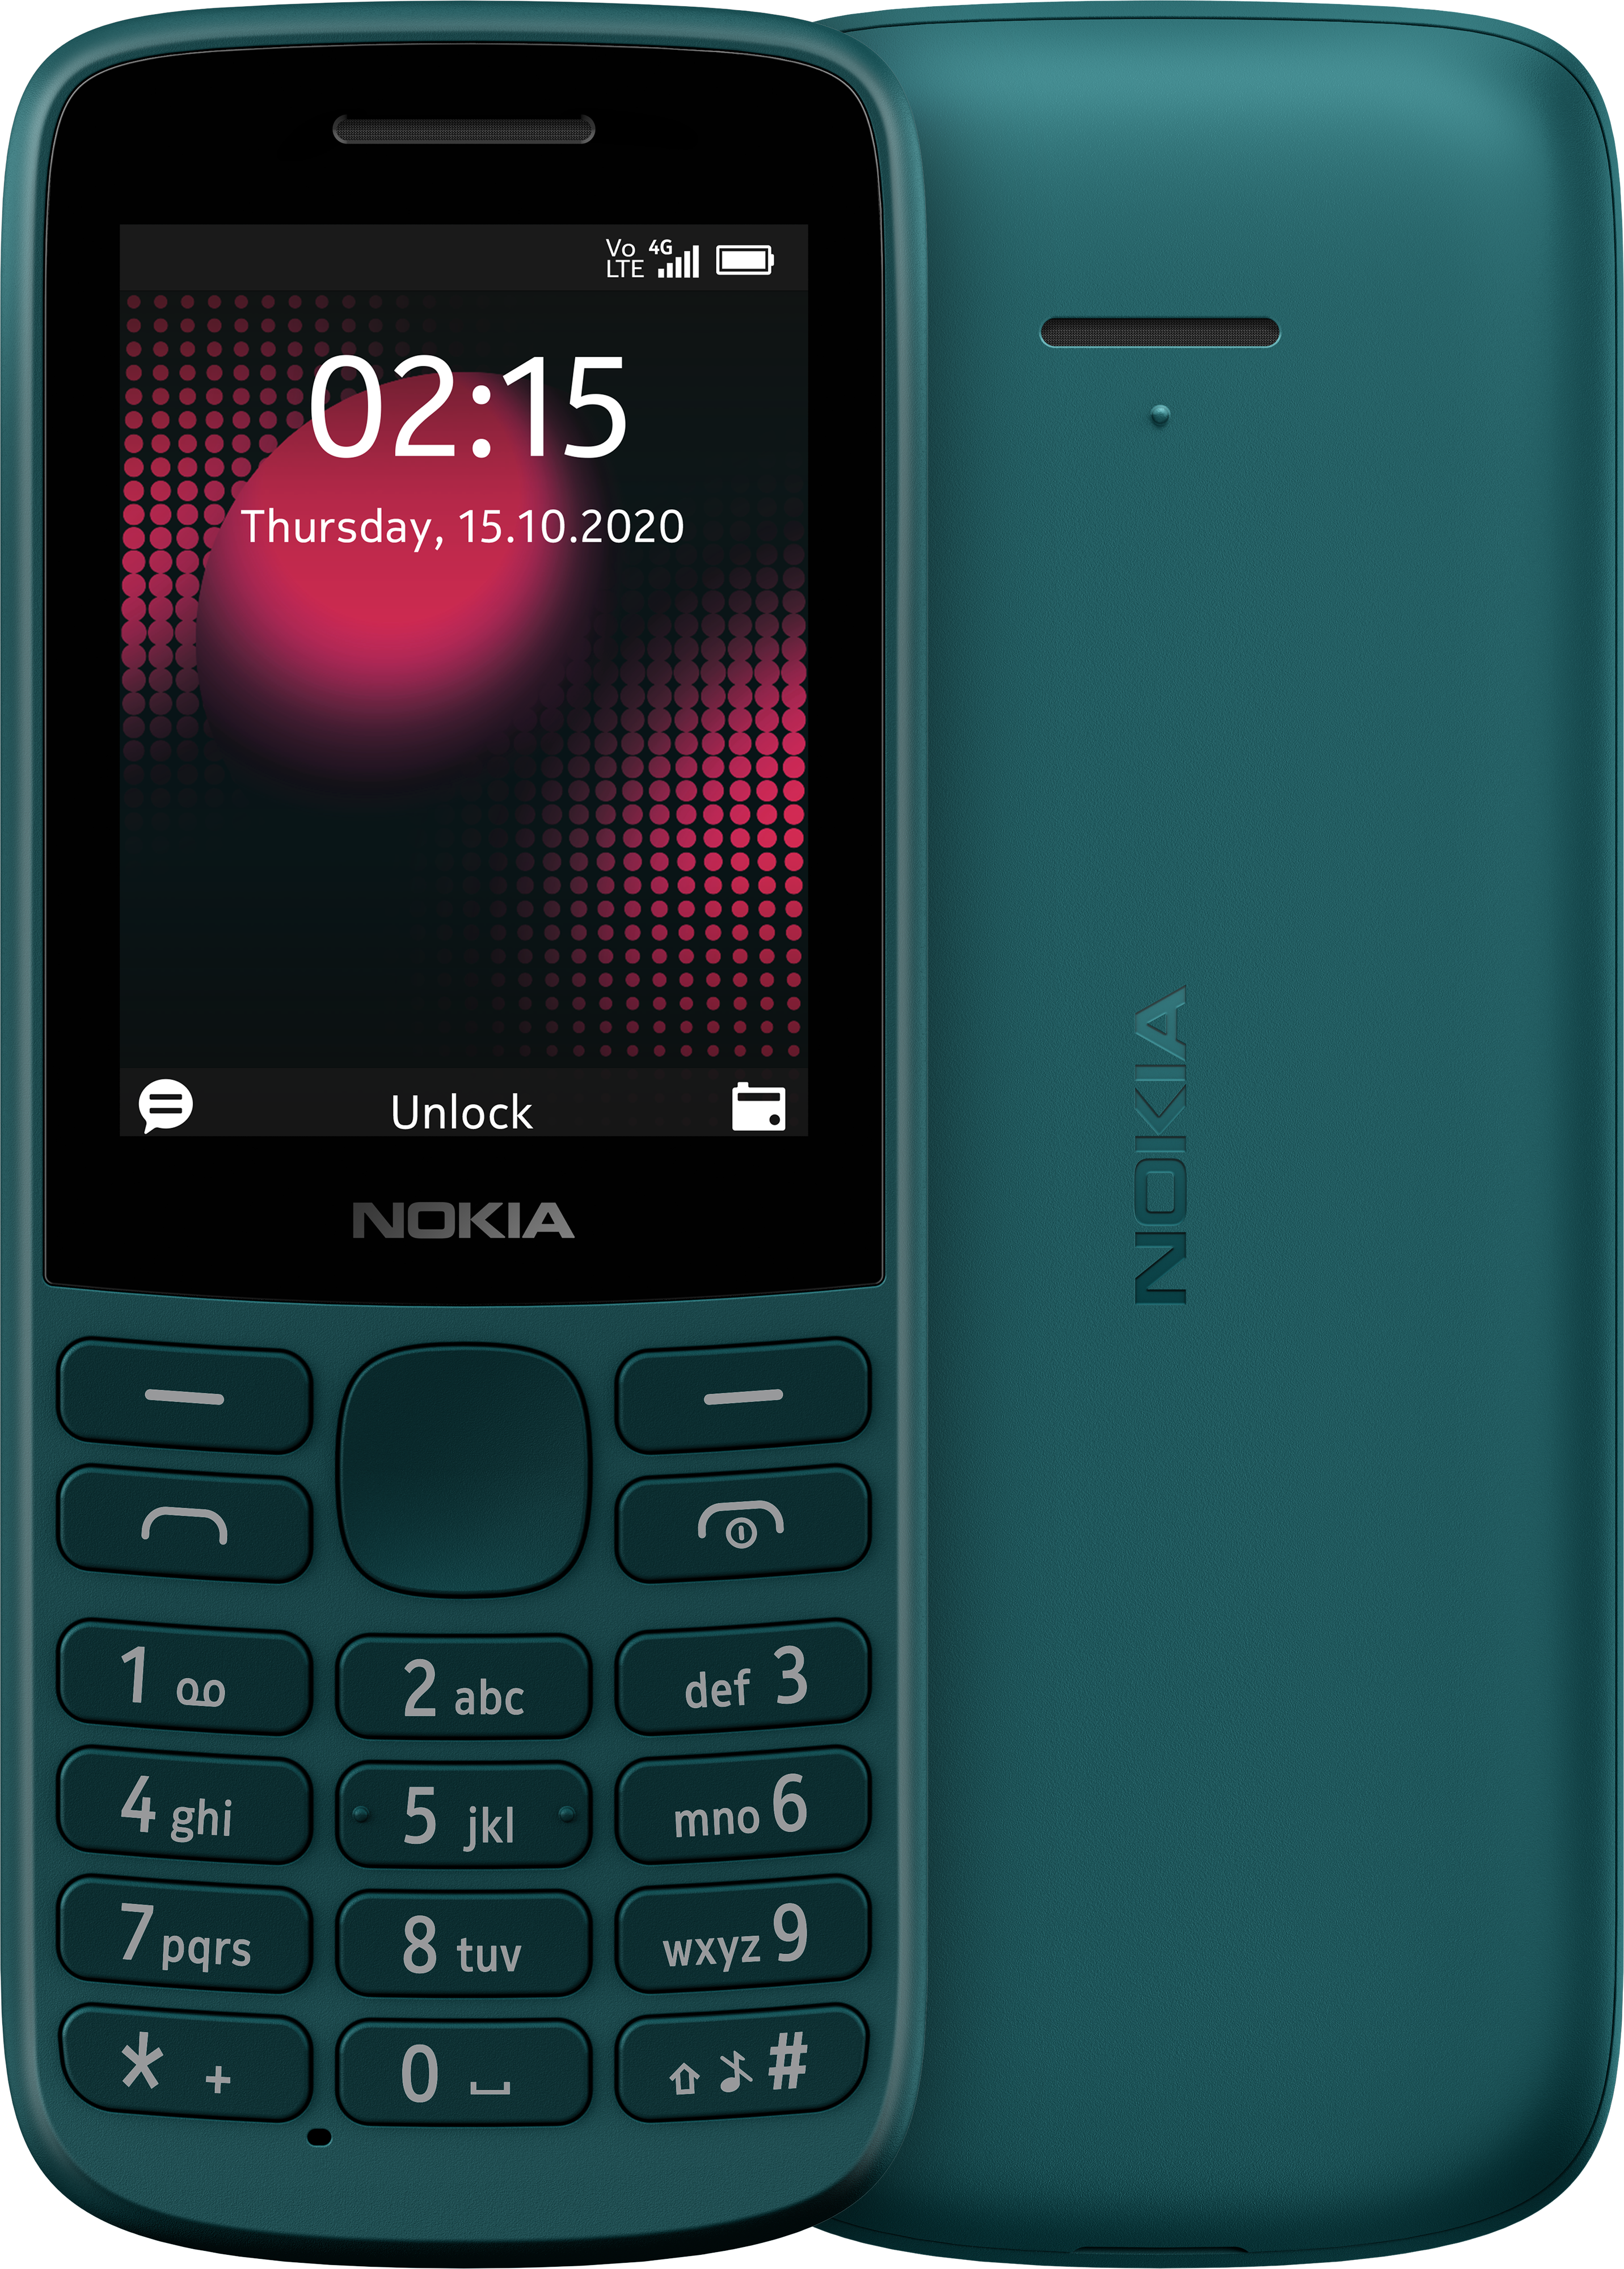 Adiós Nokia: Los próximos teléfonos de la compañía pasarán a llamarse 'HMD', Smartphone